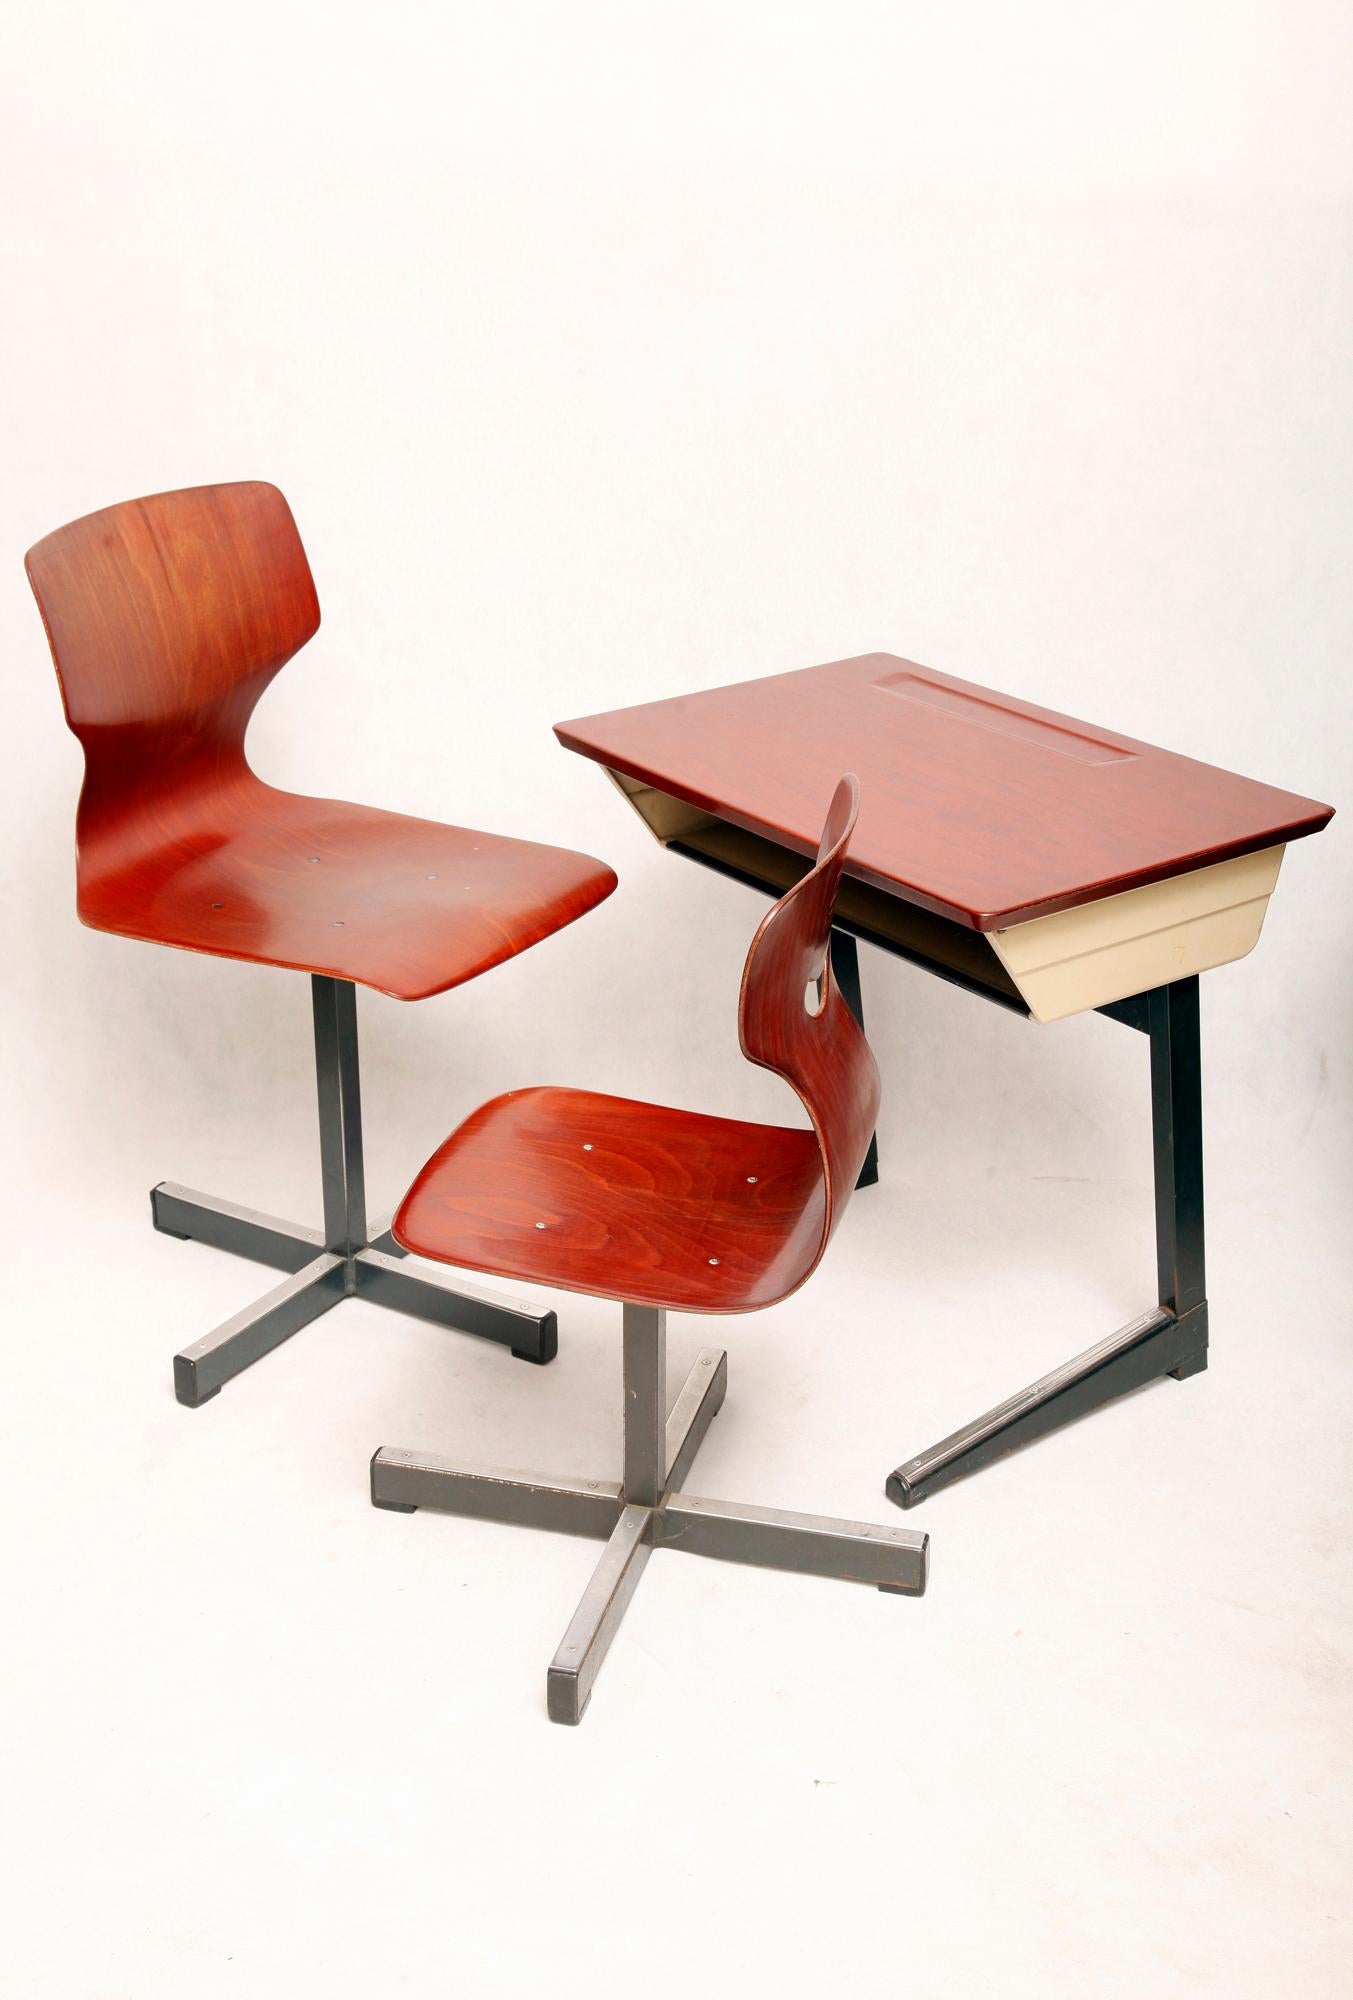 1970 school desk